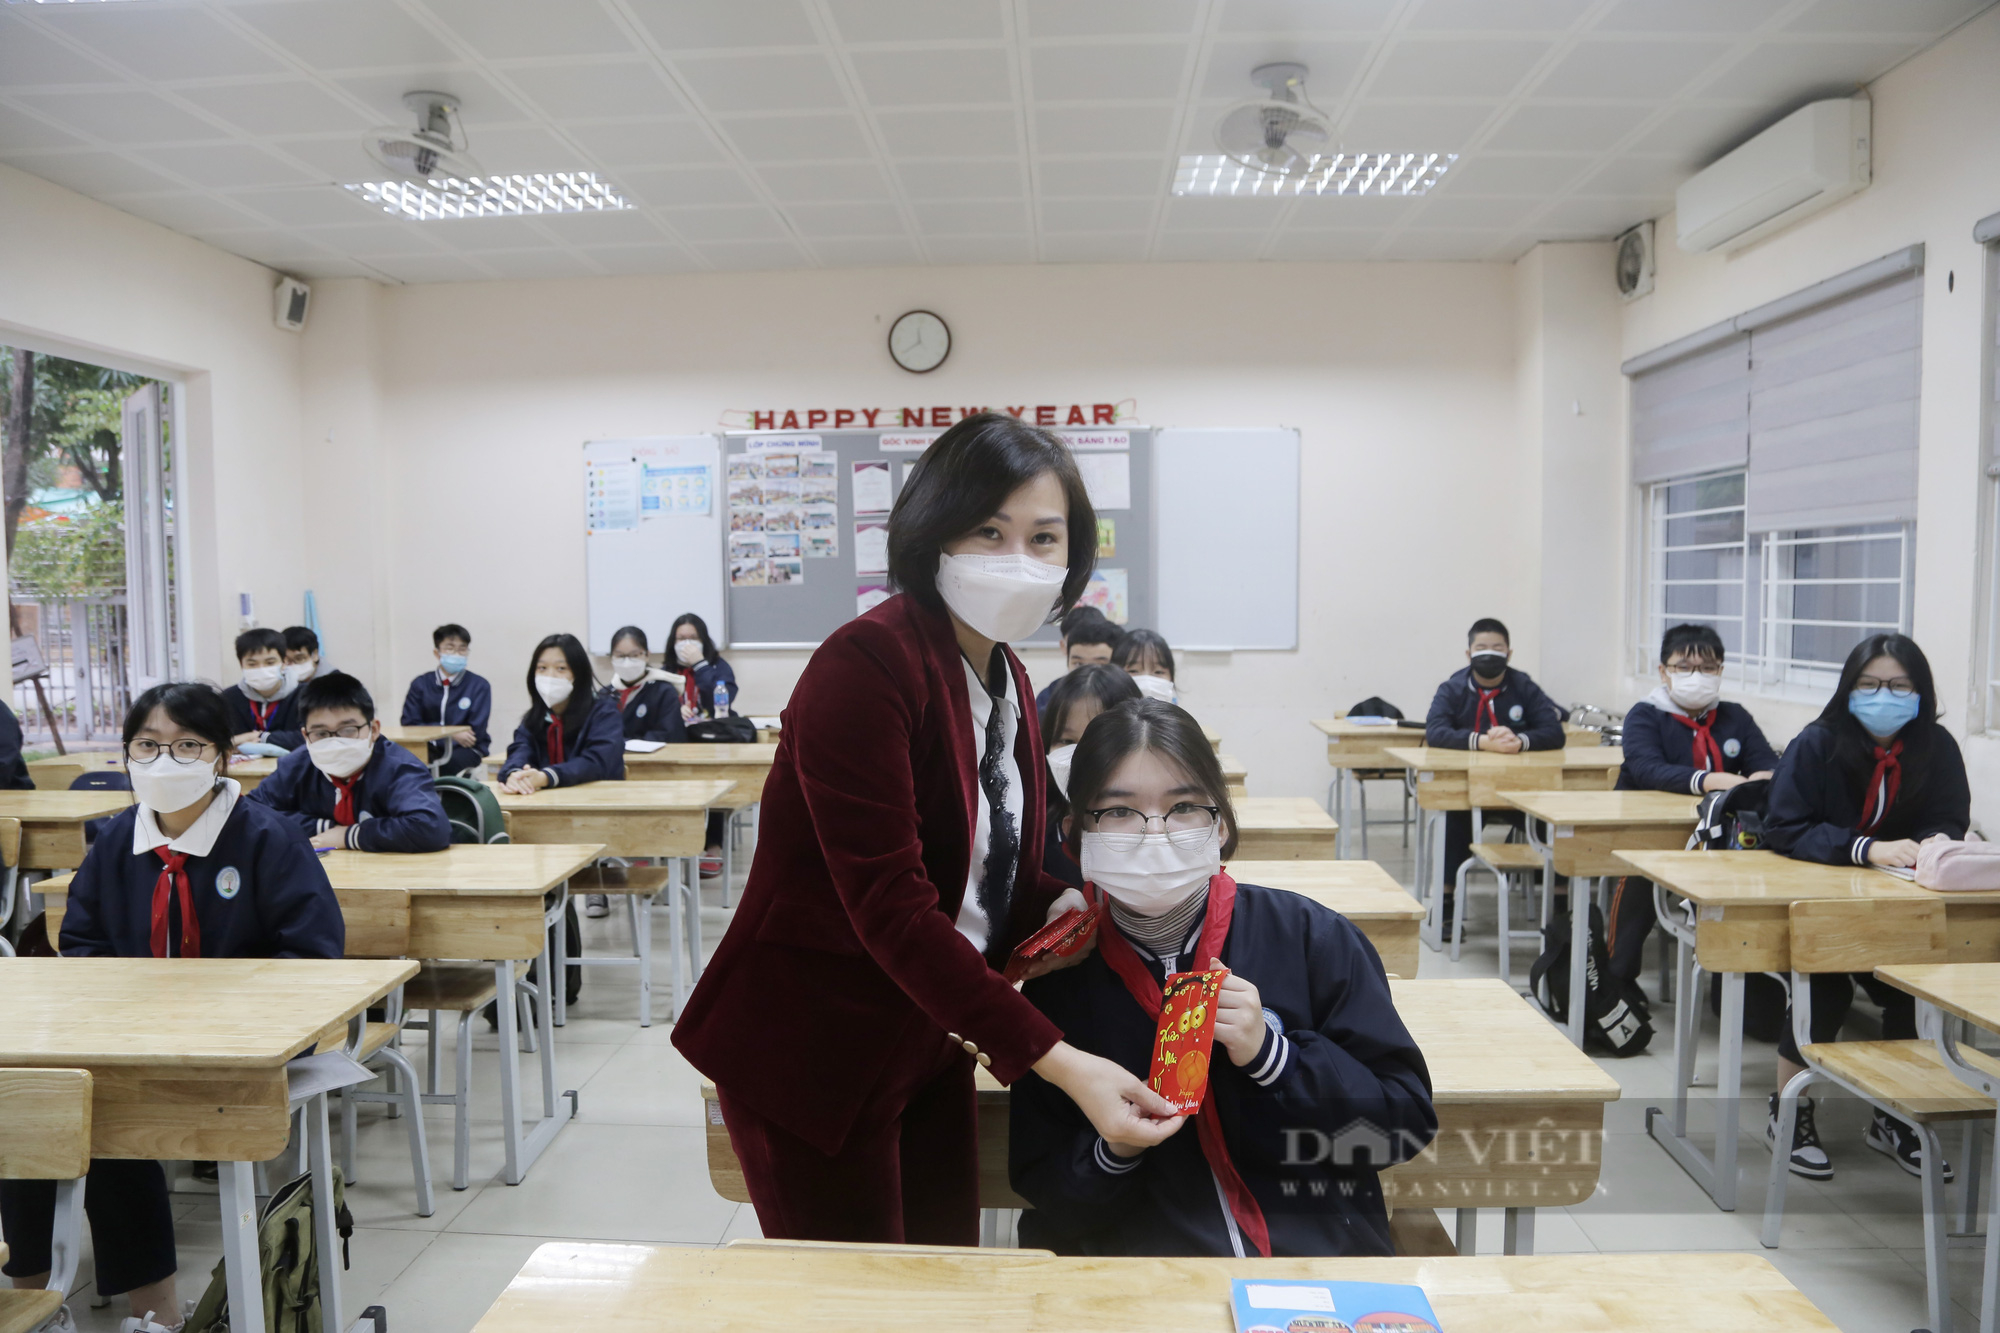 Học sinh Hà Nội đi học lại ngày 8/2: Nhà trường chuẩn bị kỹ càng, học sinh vui mừng nhận lì xì đầu năm - Ảnh 3.